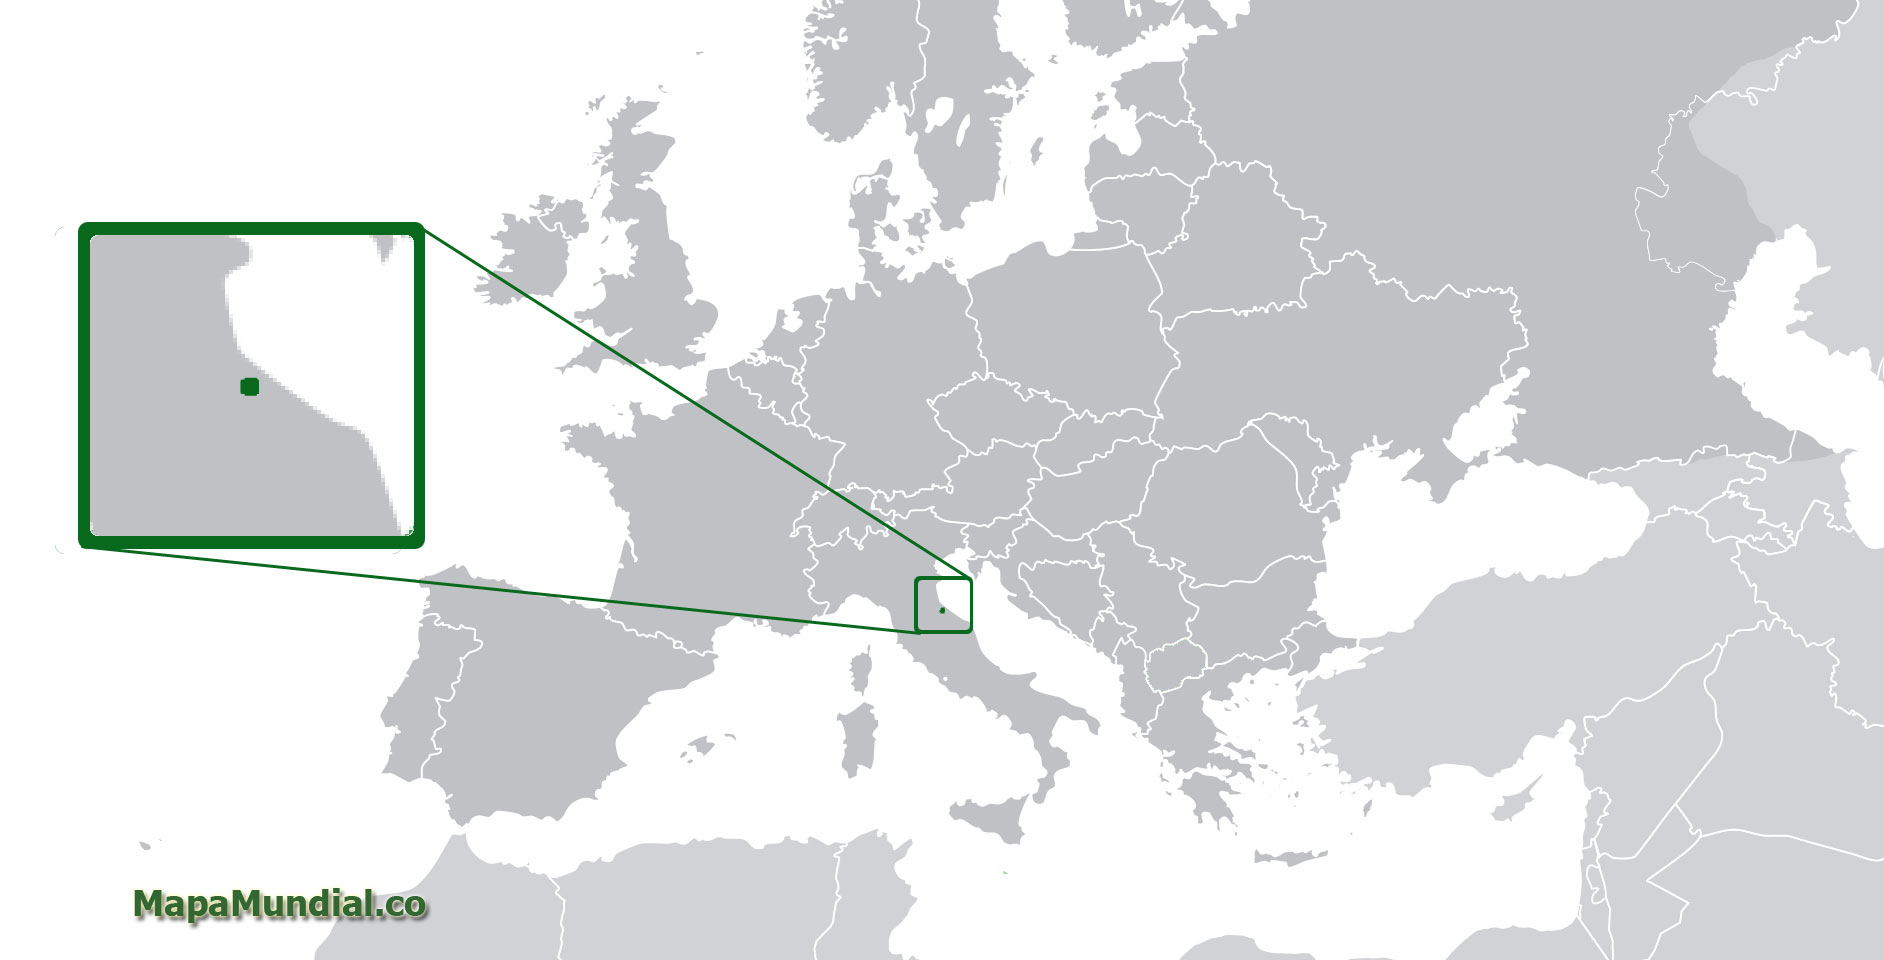 ﻿Mapa de San Marino﻿, donde está, queda, país, encuentra, localización